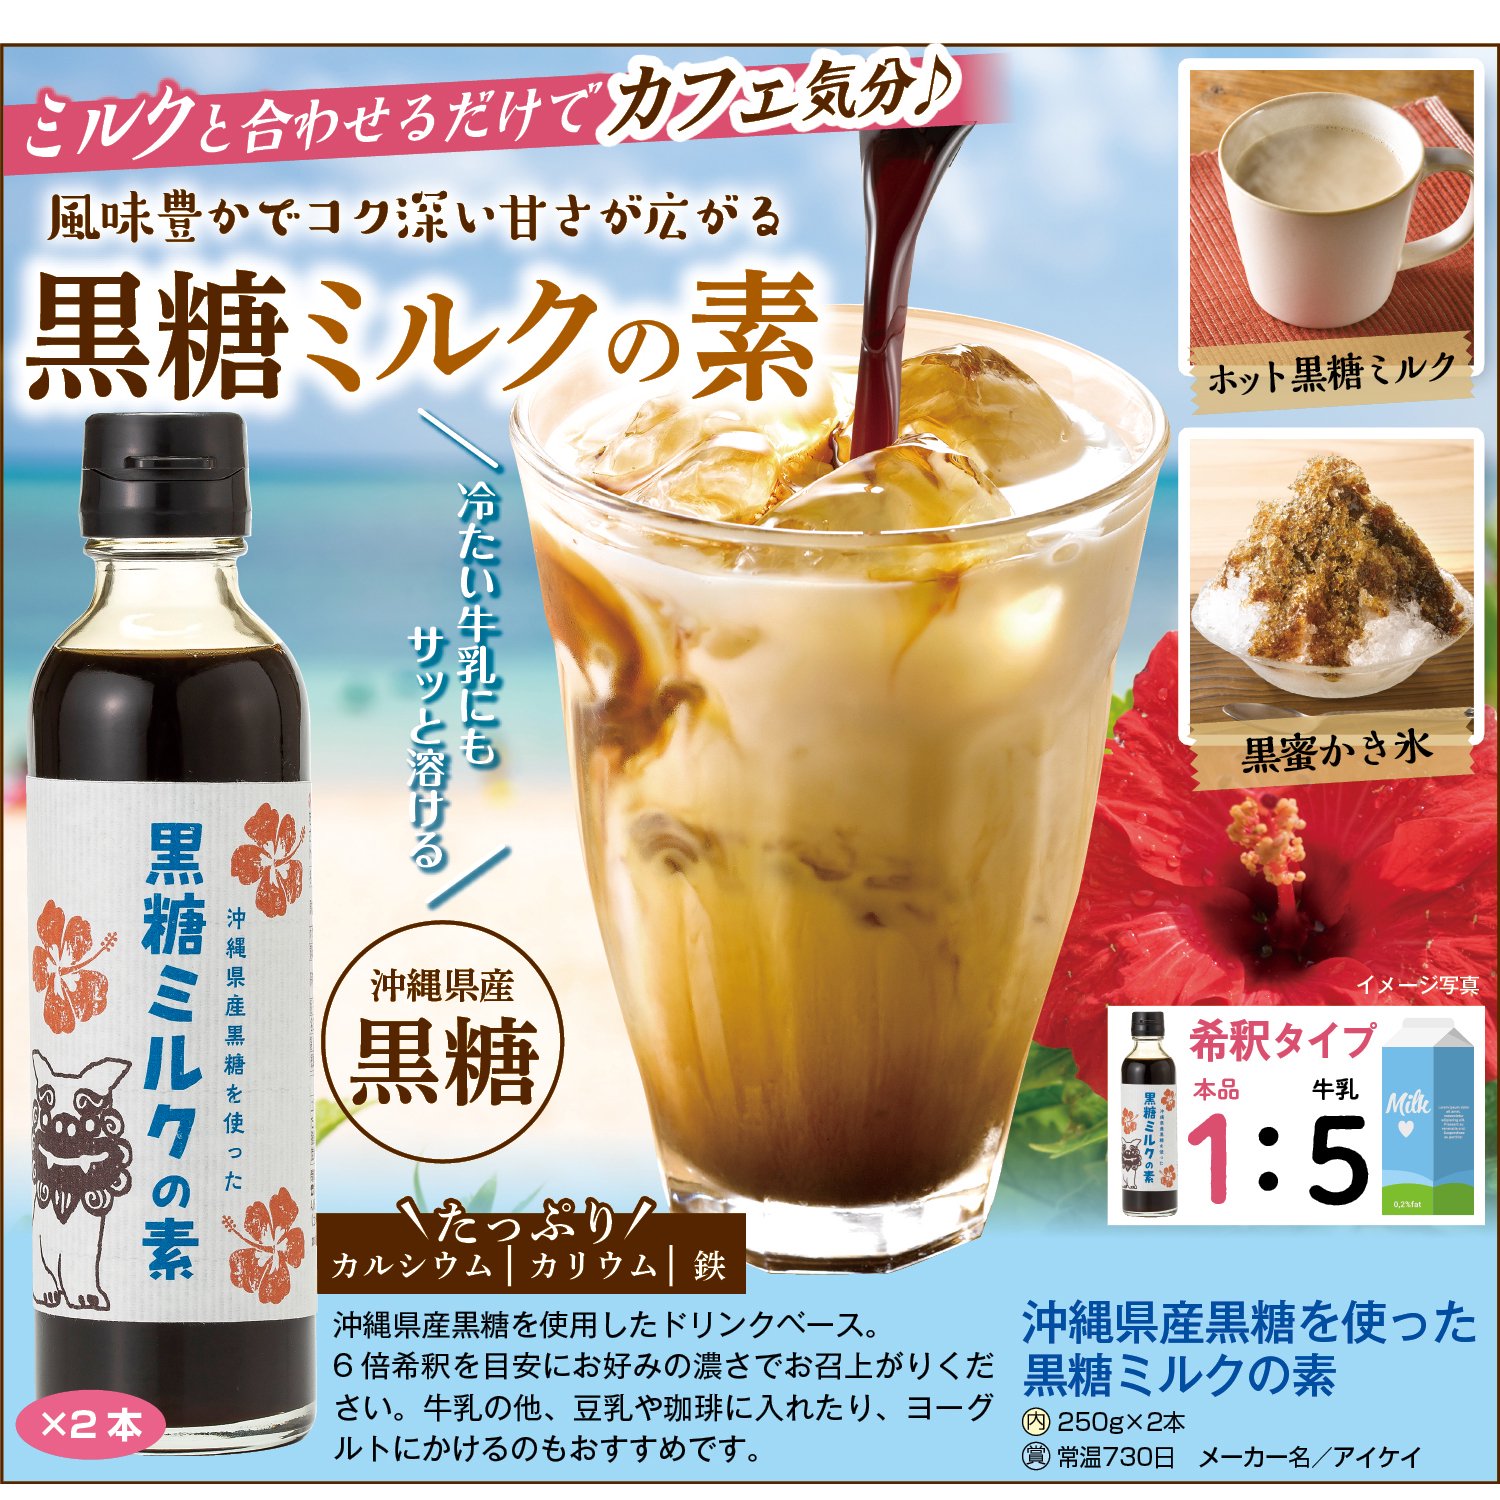 アイケイ優待サイト 沖縄県産黒糖を使った黒糖ミルクの素 250g×2本